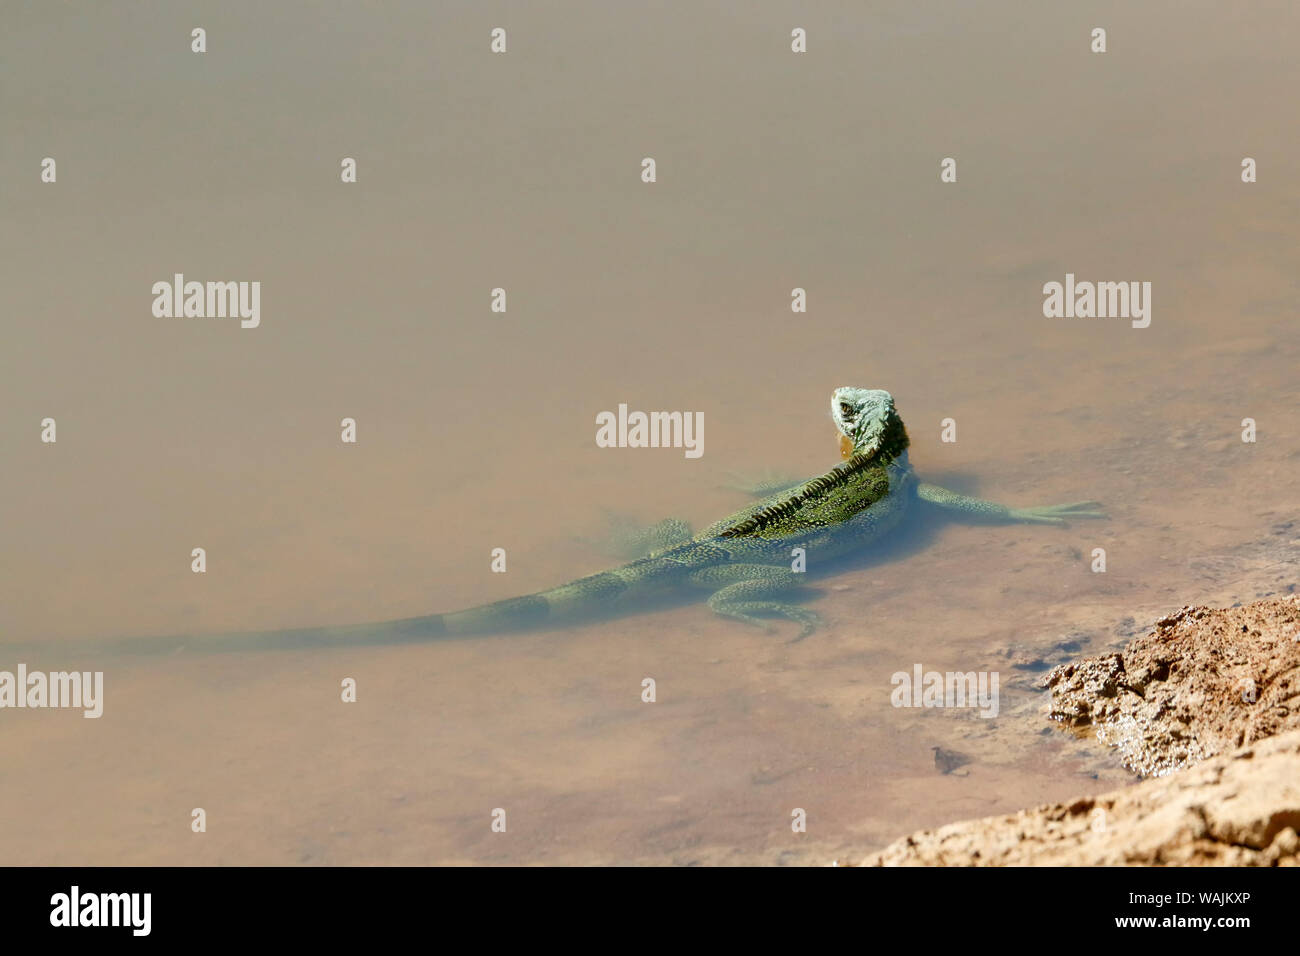 Pantanal, Mato Grosso, Brasilien. Grüner Leguan in den Untiefen eines Flusses. Grün, oder gemeinsame, Leguane gehören zu den größten Echsen in Amerika, im Durchschnitt um 6,5 Fuß (2 Meter) lang und mit einem Gewicht von über 11 Pfund (5 kg). Stockfoto